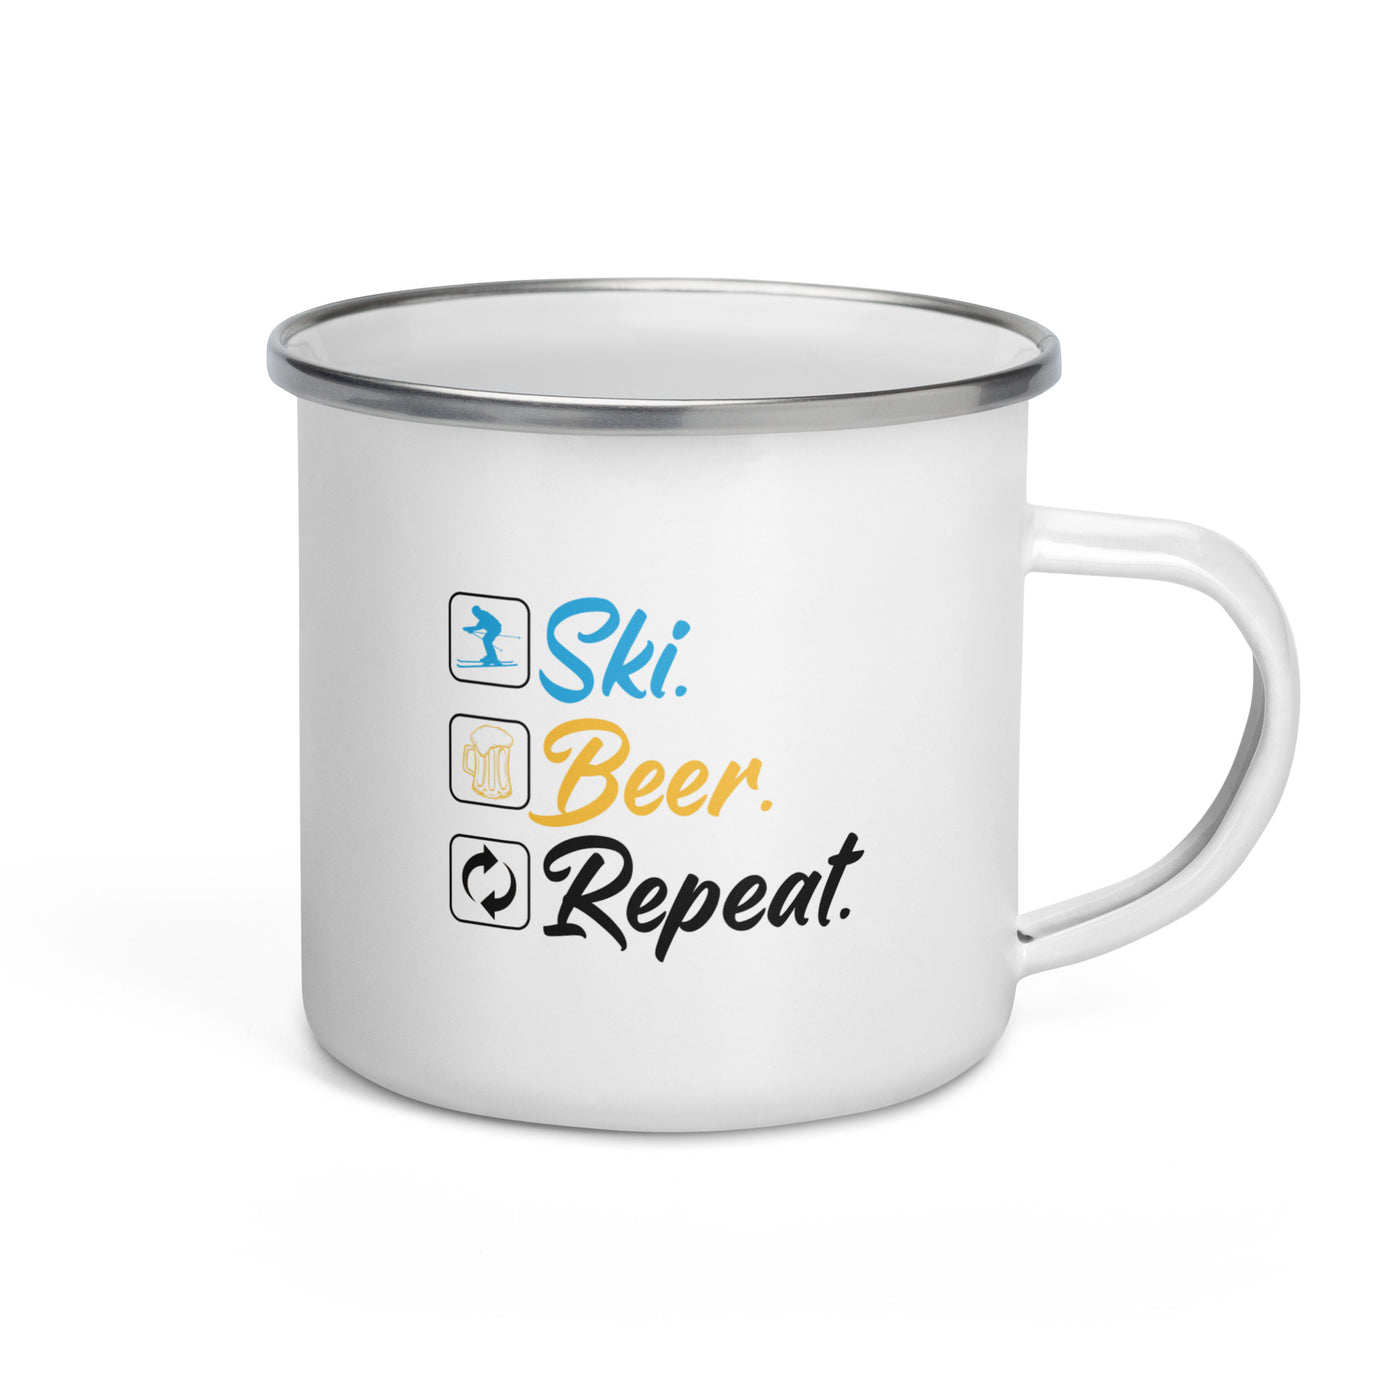 Ski. Beer. Repeat. - (S.K) - Emaille Tasse klettern Default Title